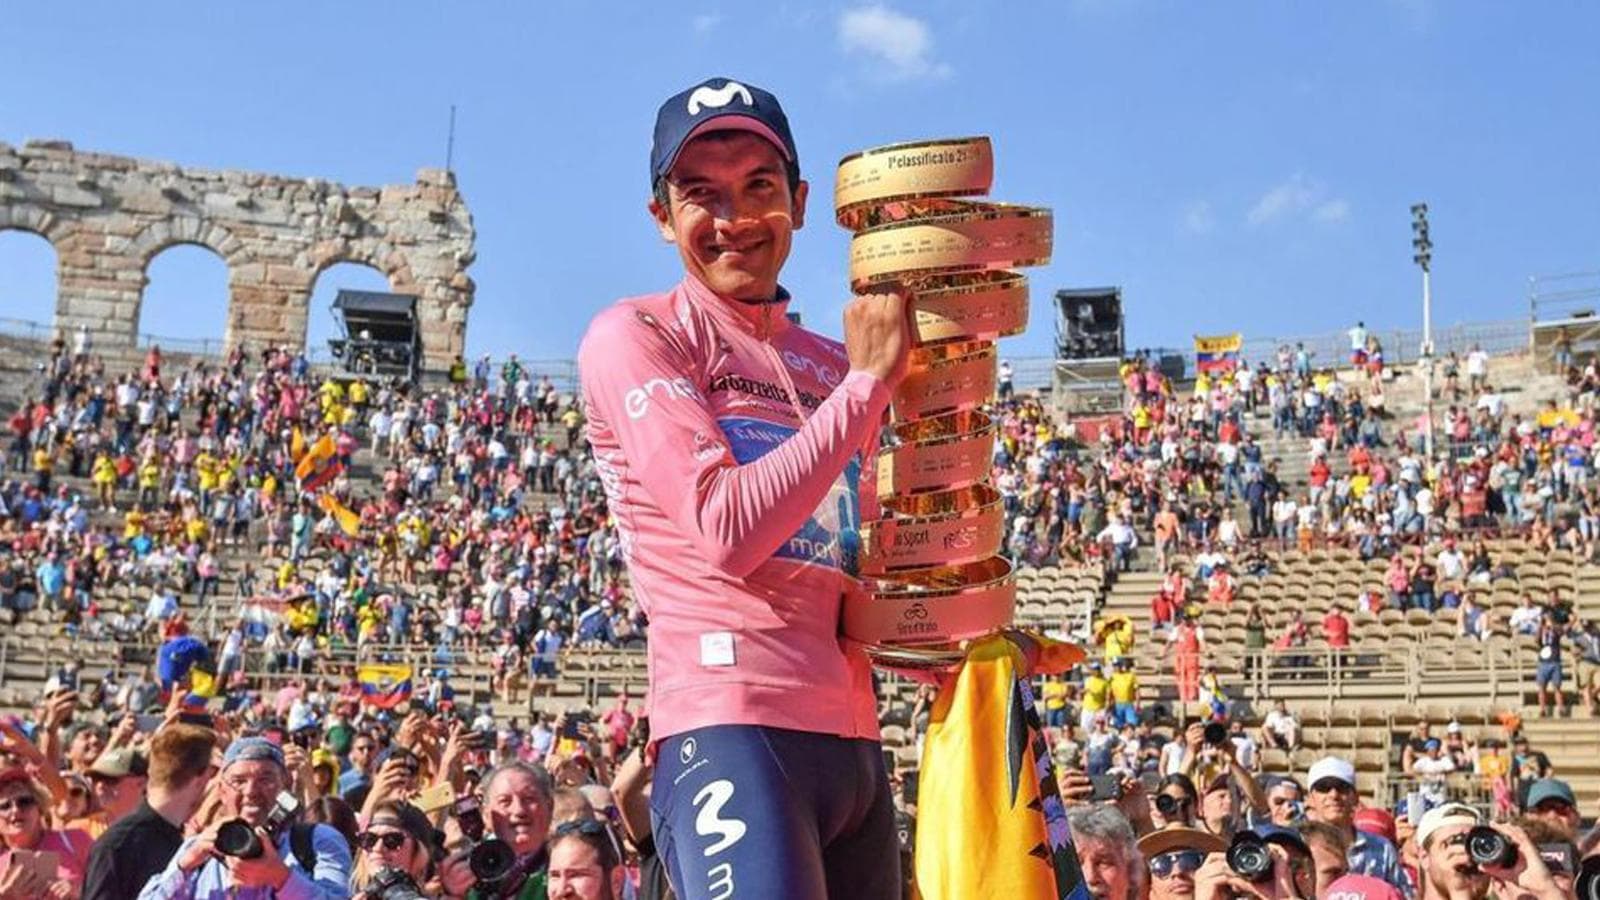 Giro d'Italia 2020 giovedì pomeriggio il percorso svelato in diretta